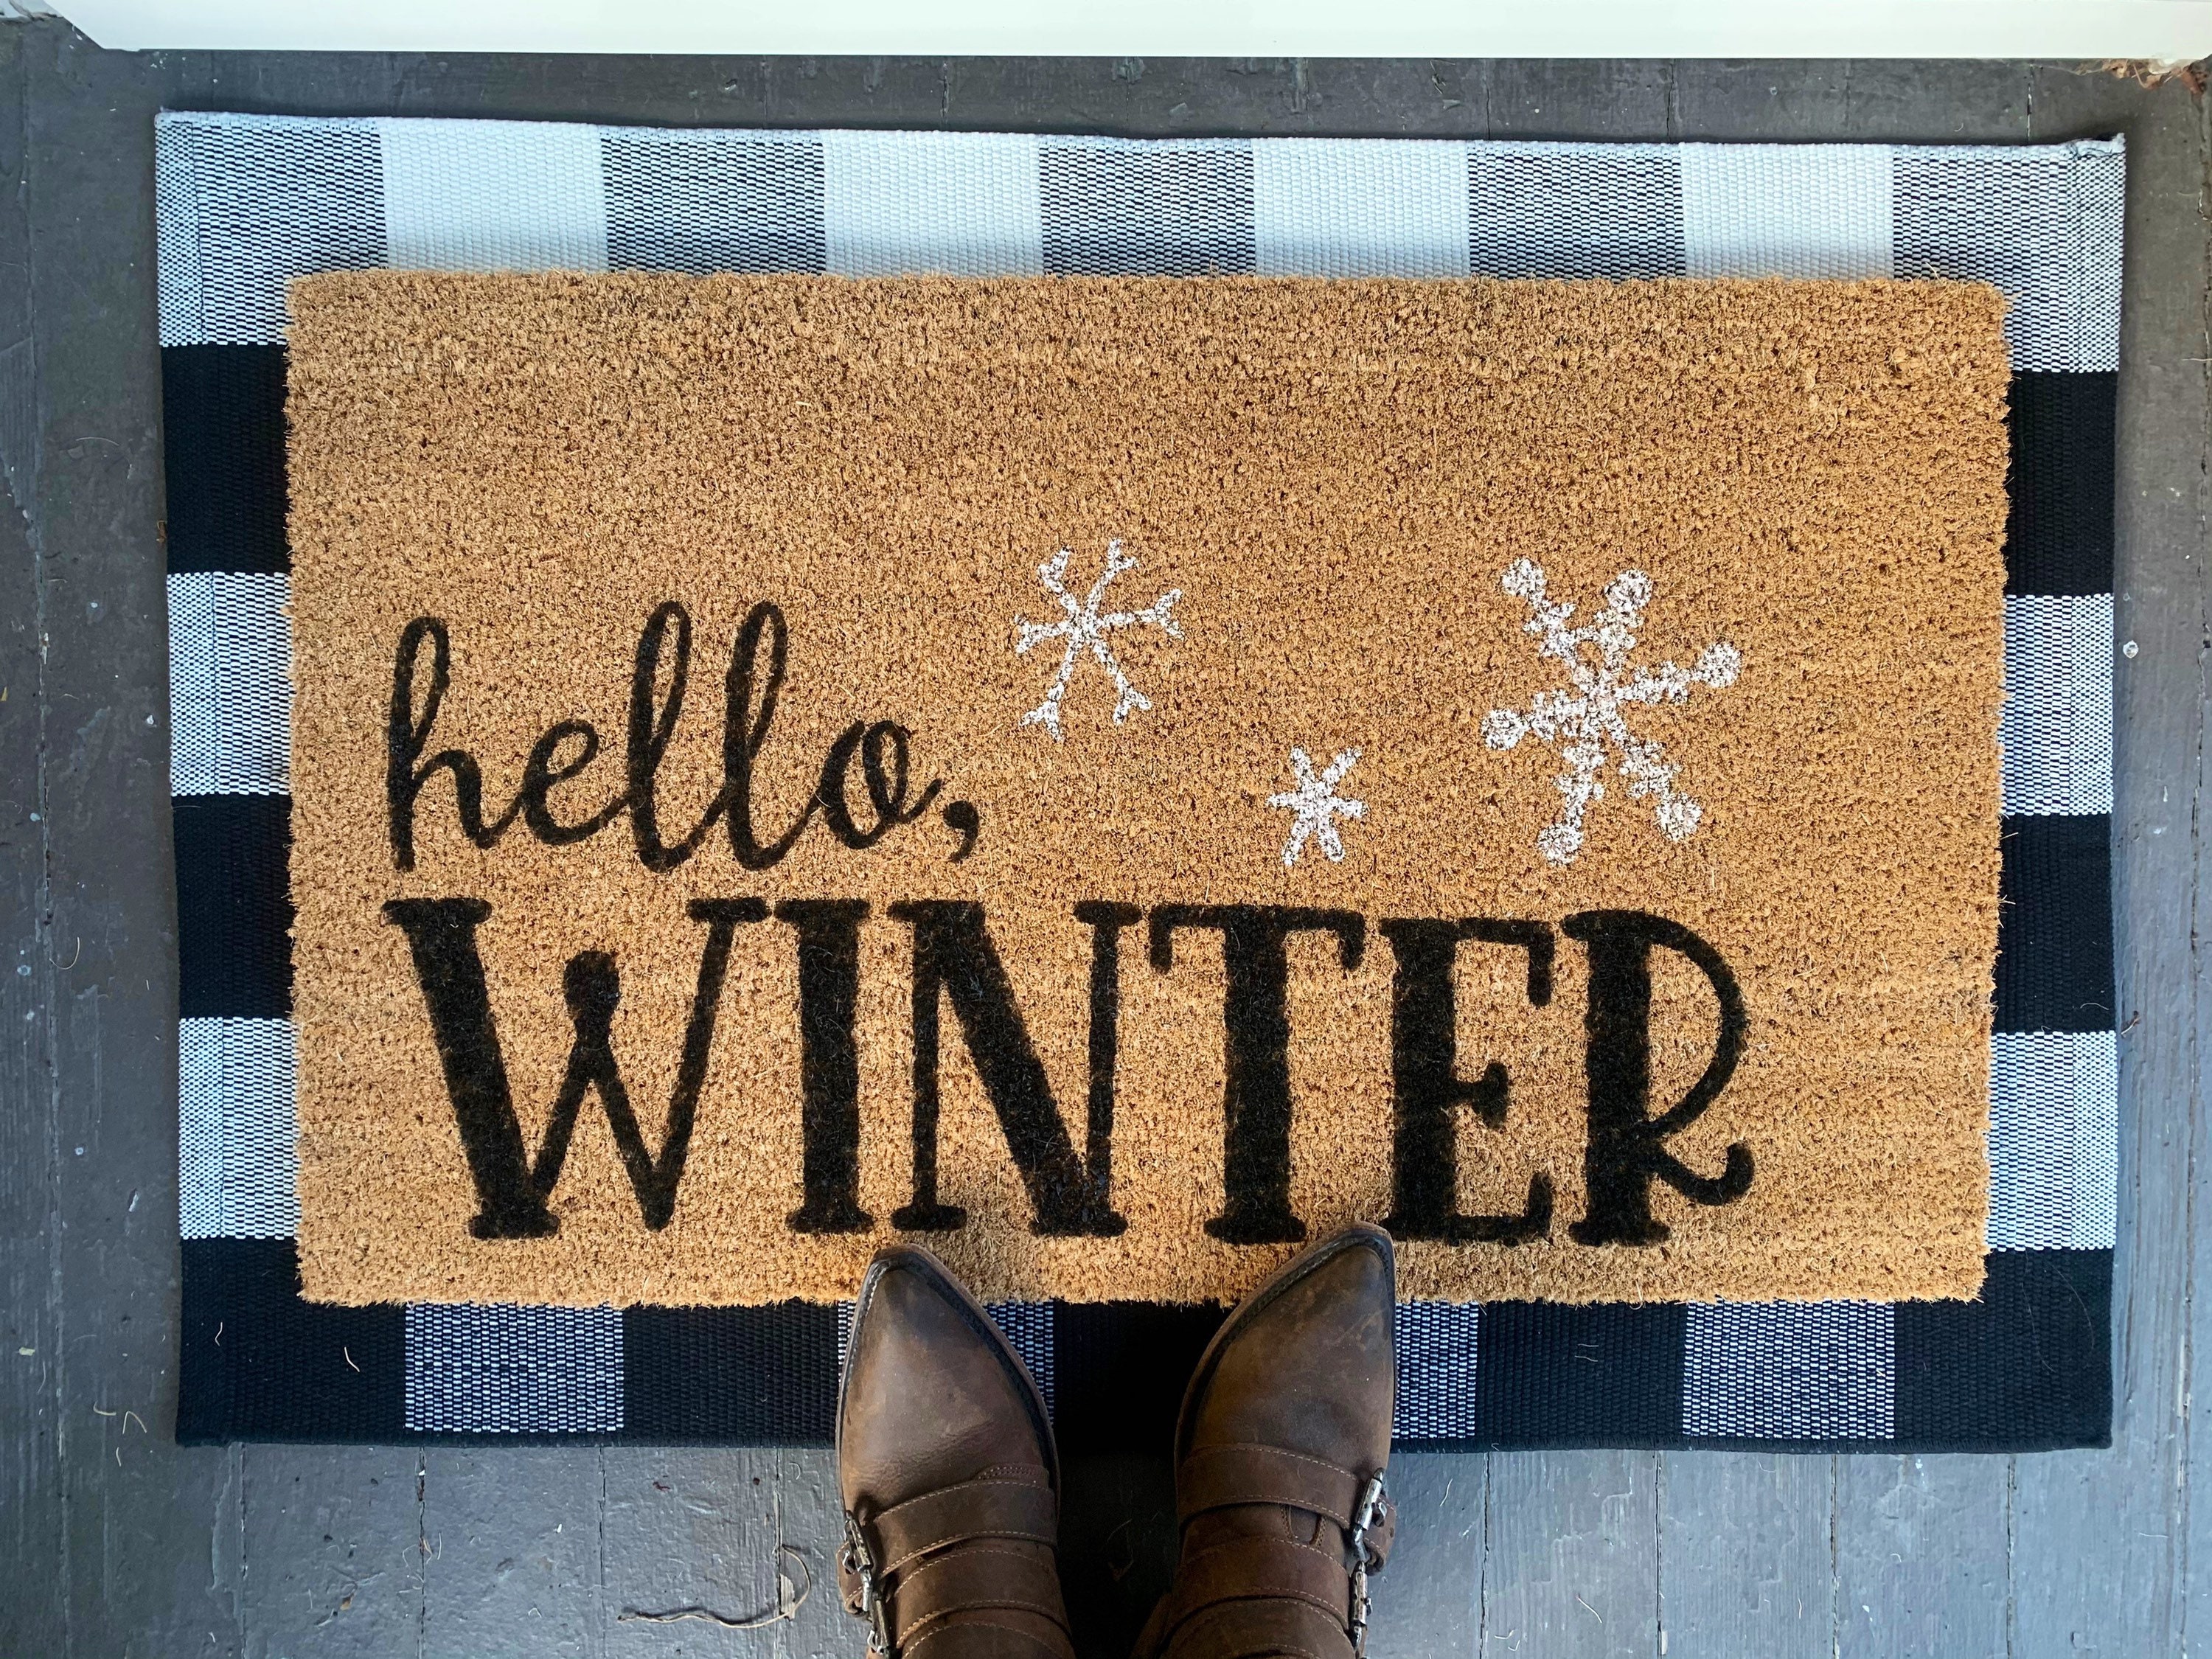 Go Away, Winter Outdoor Coir Door Mat